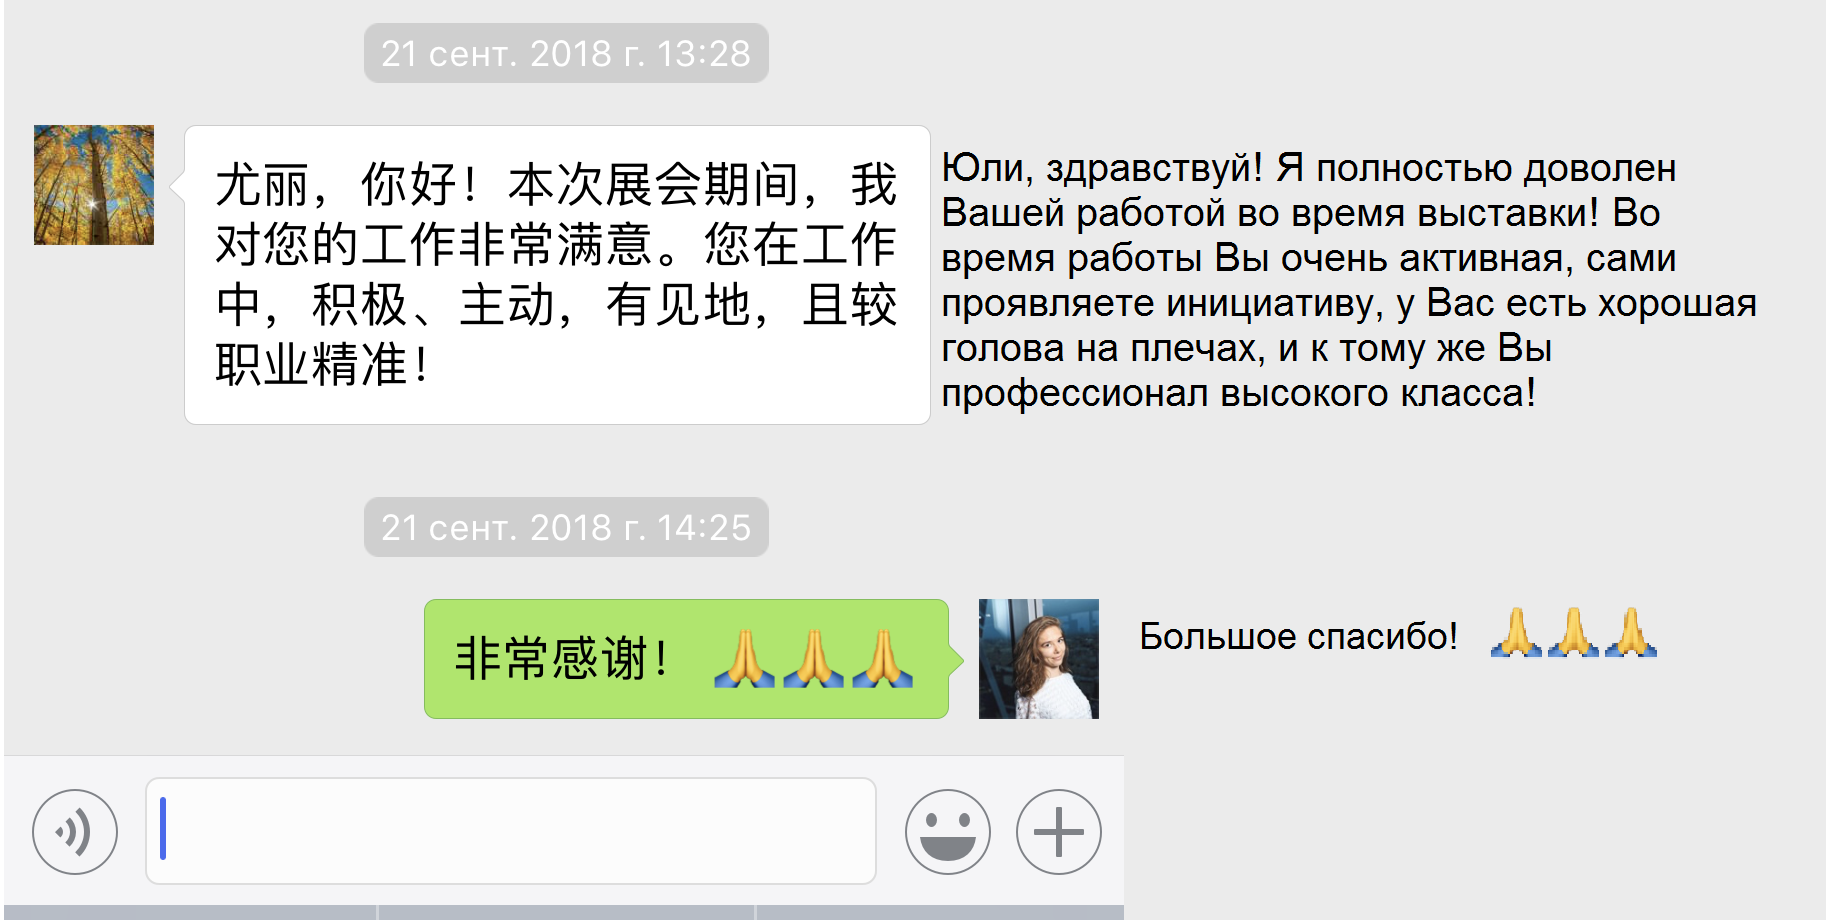 Перевод и китайского на русский онлайн по фото бесплатно и без регистрации